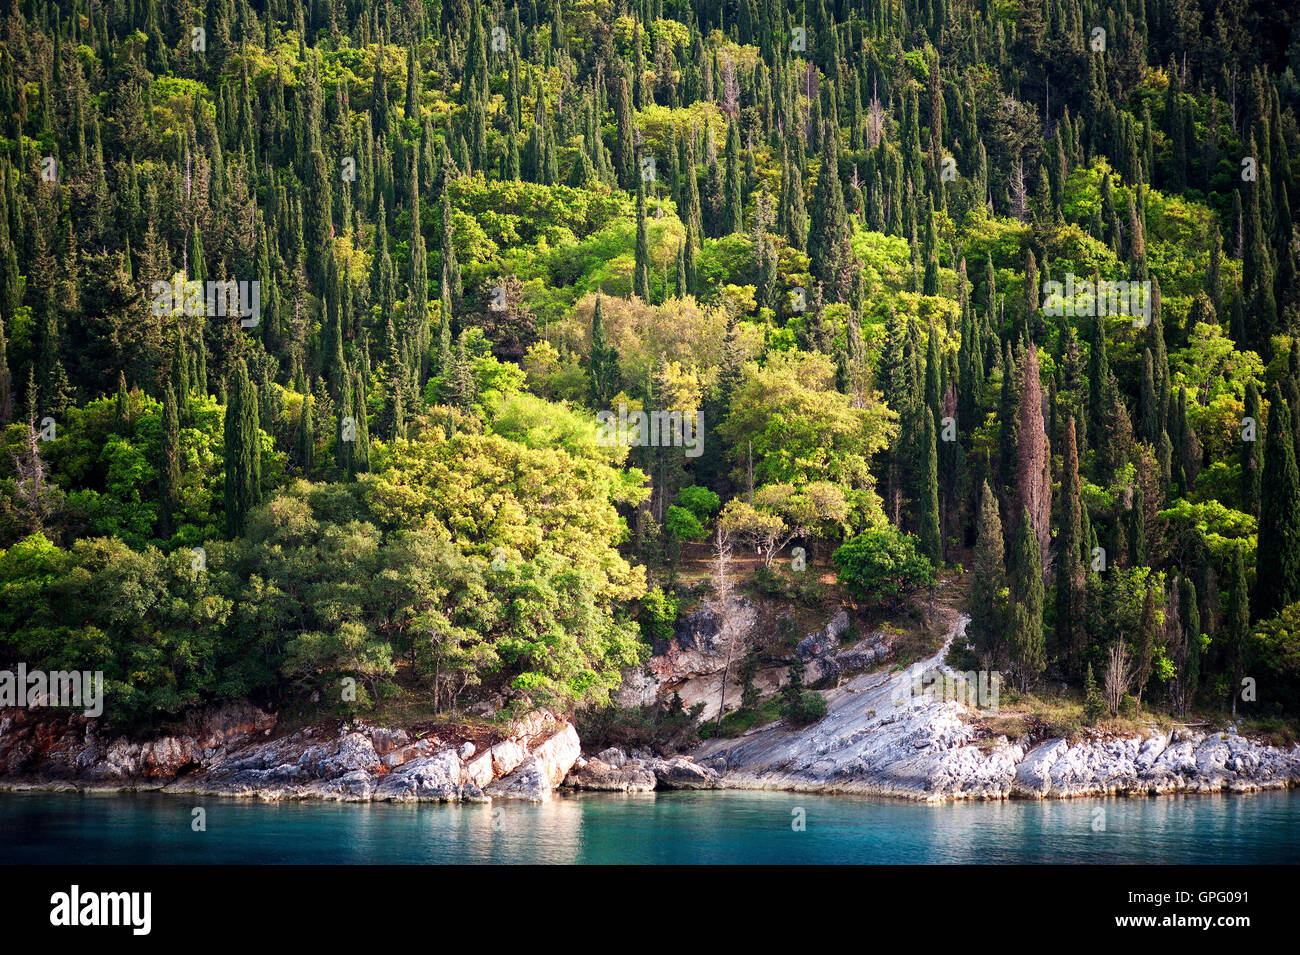 L'île de Kefalonia, Grèce : une vue de cyprès méditerranéens bordant les eaux turquoise de la mer Ionienne . Banque D'Images